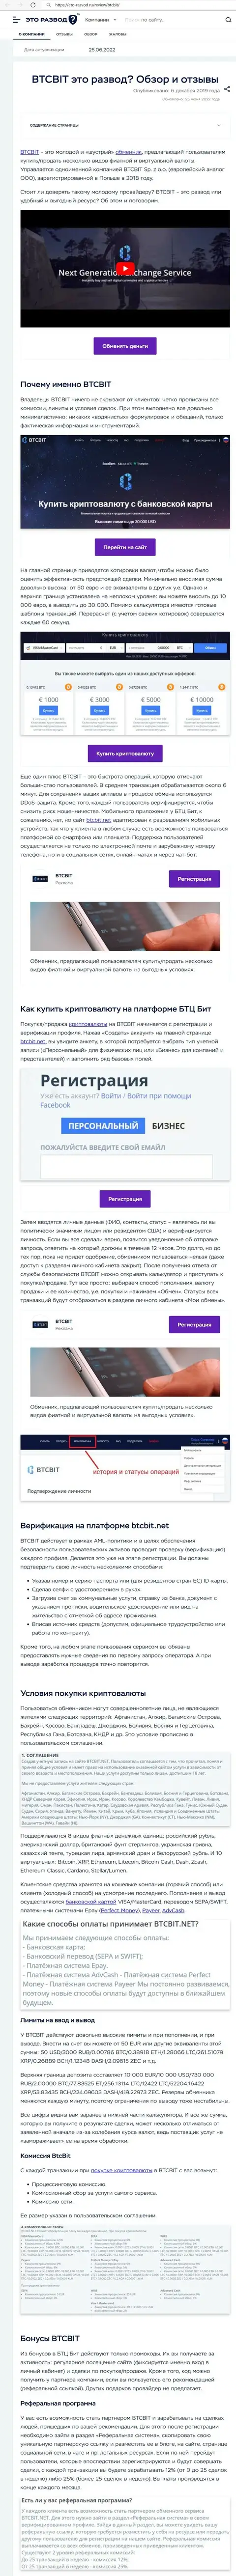 Анализ деятельности и условия работы online обменника БТЦБит в информационном материале на онлайн-сервисе eto razvod ru